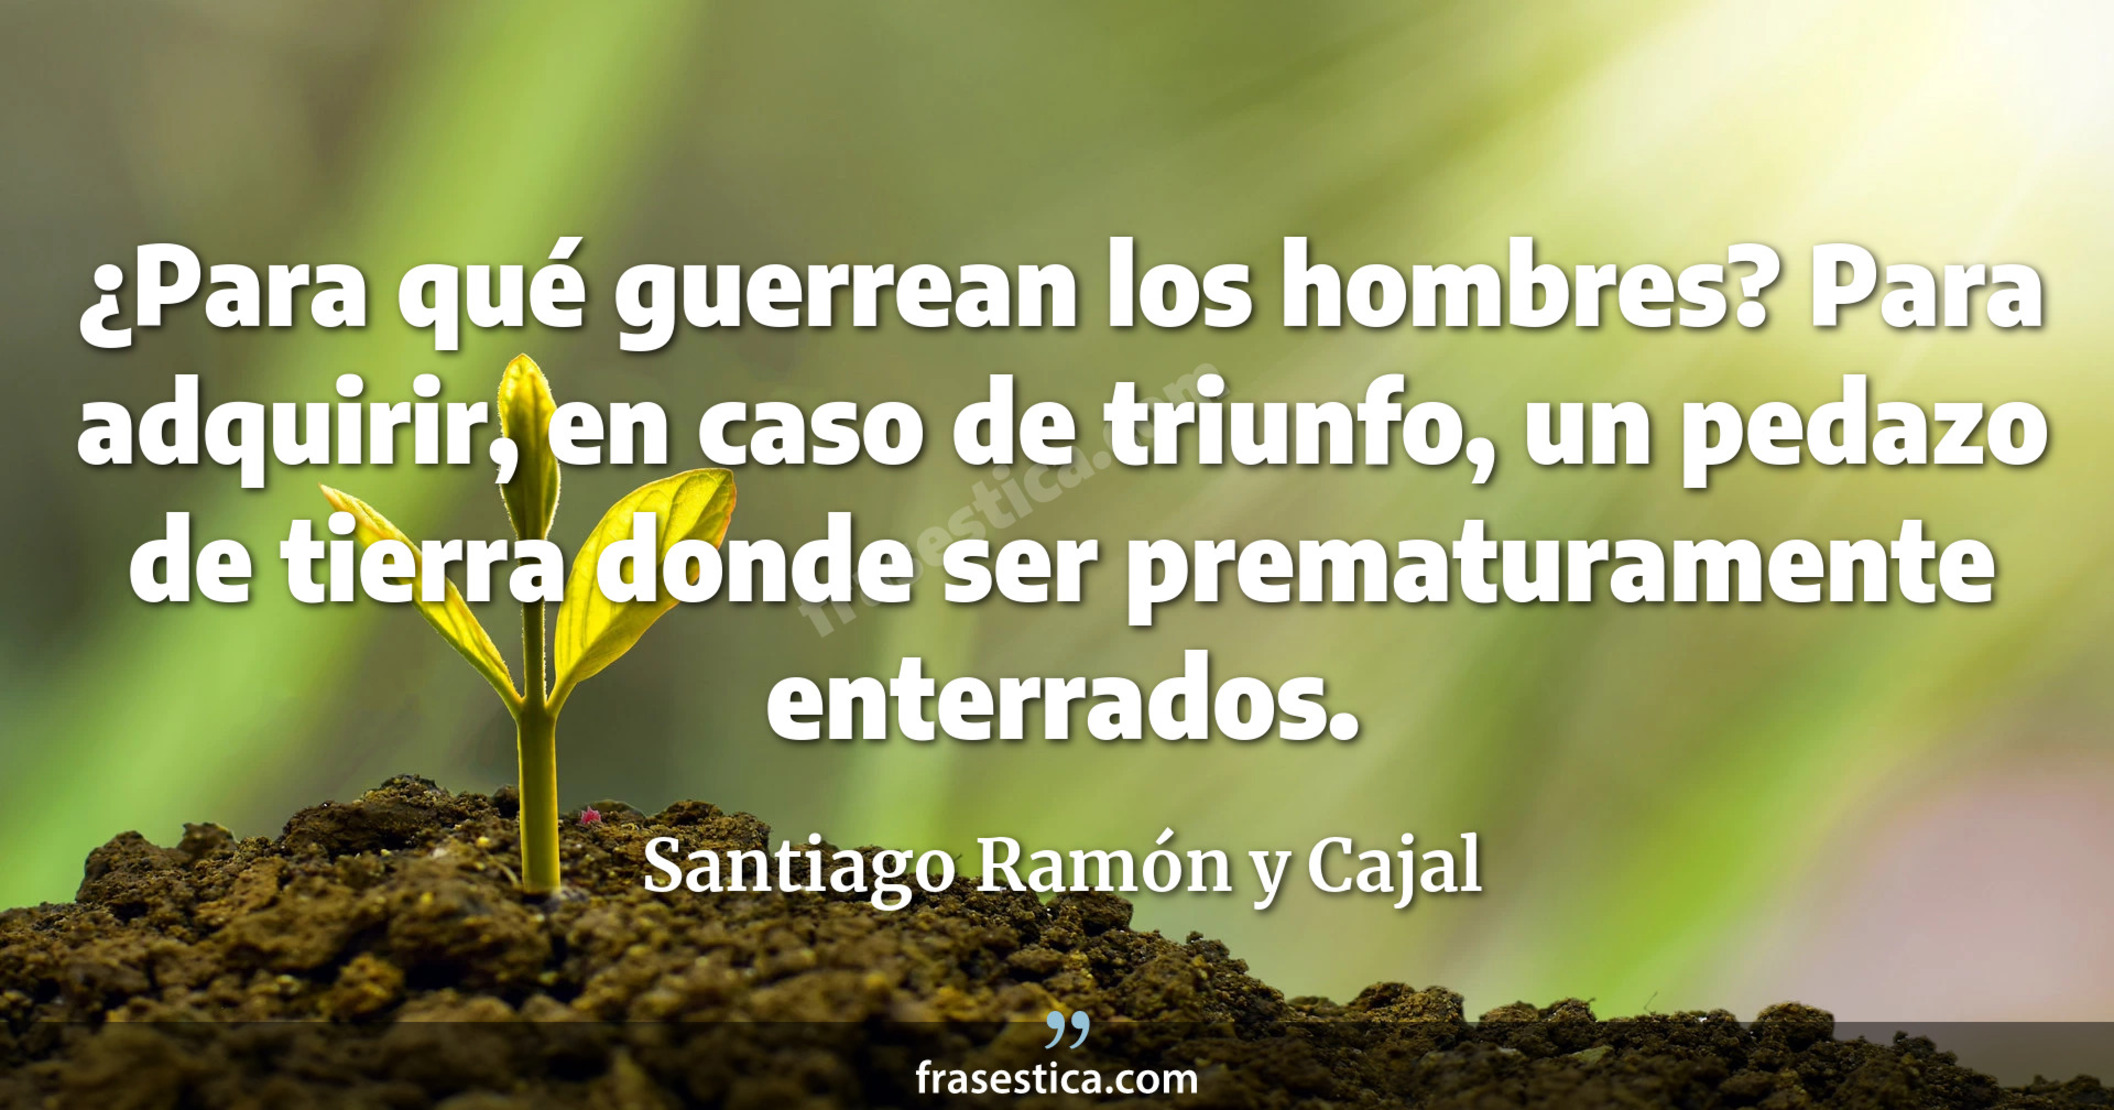 ¿Para qué guerrean los hombres? Para adquirir, en caso de triunfo, un pedazo de tierra donde ser prematuramente enterrados. - Santiago Ramón y Cajal